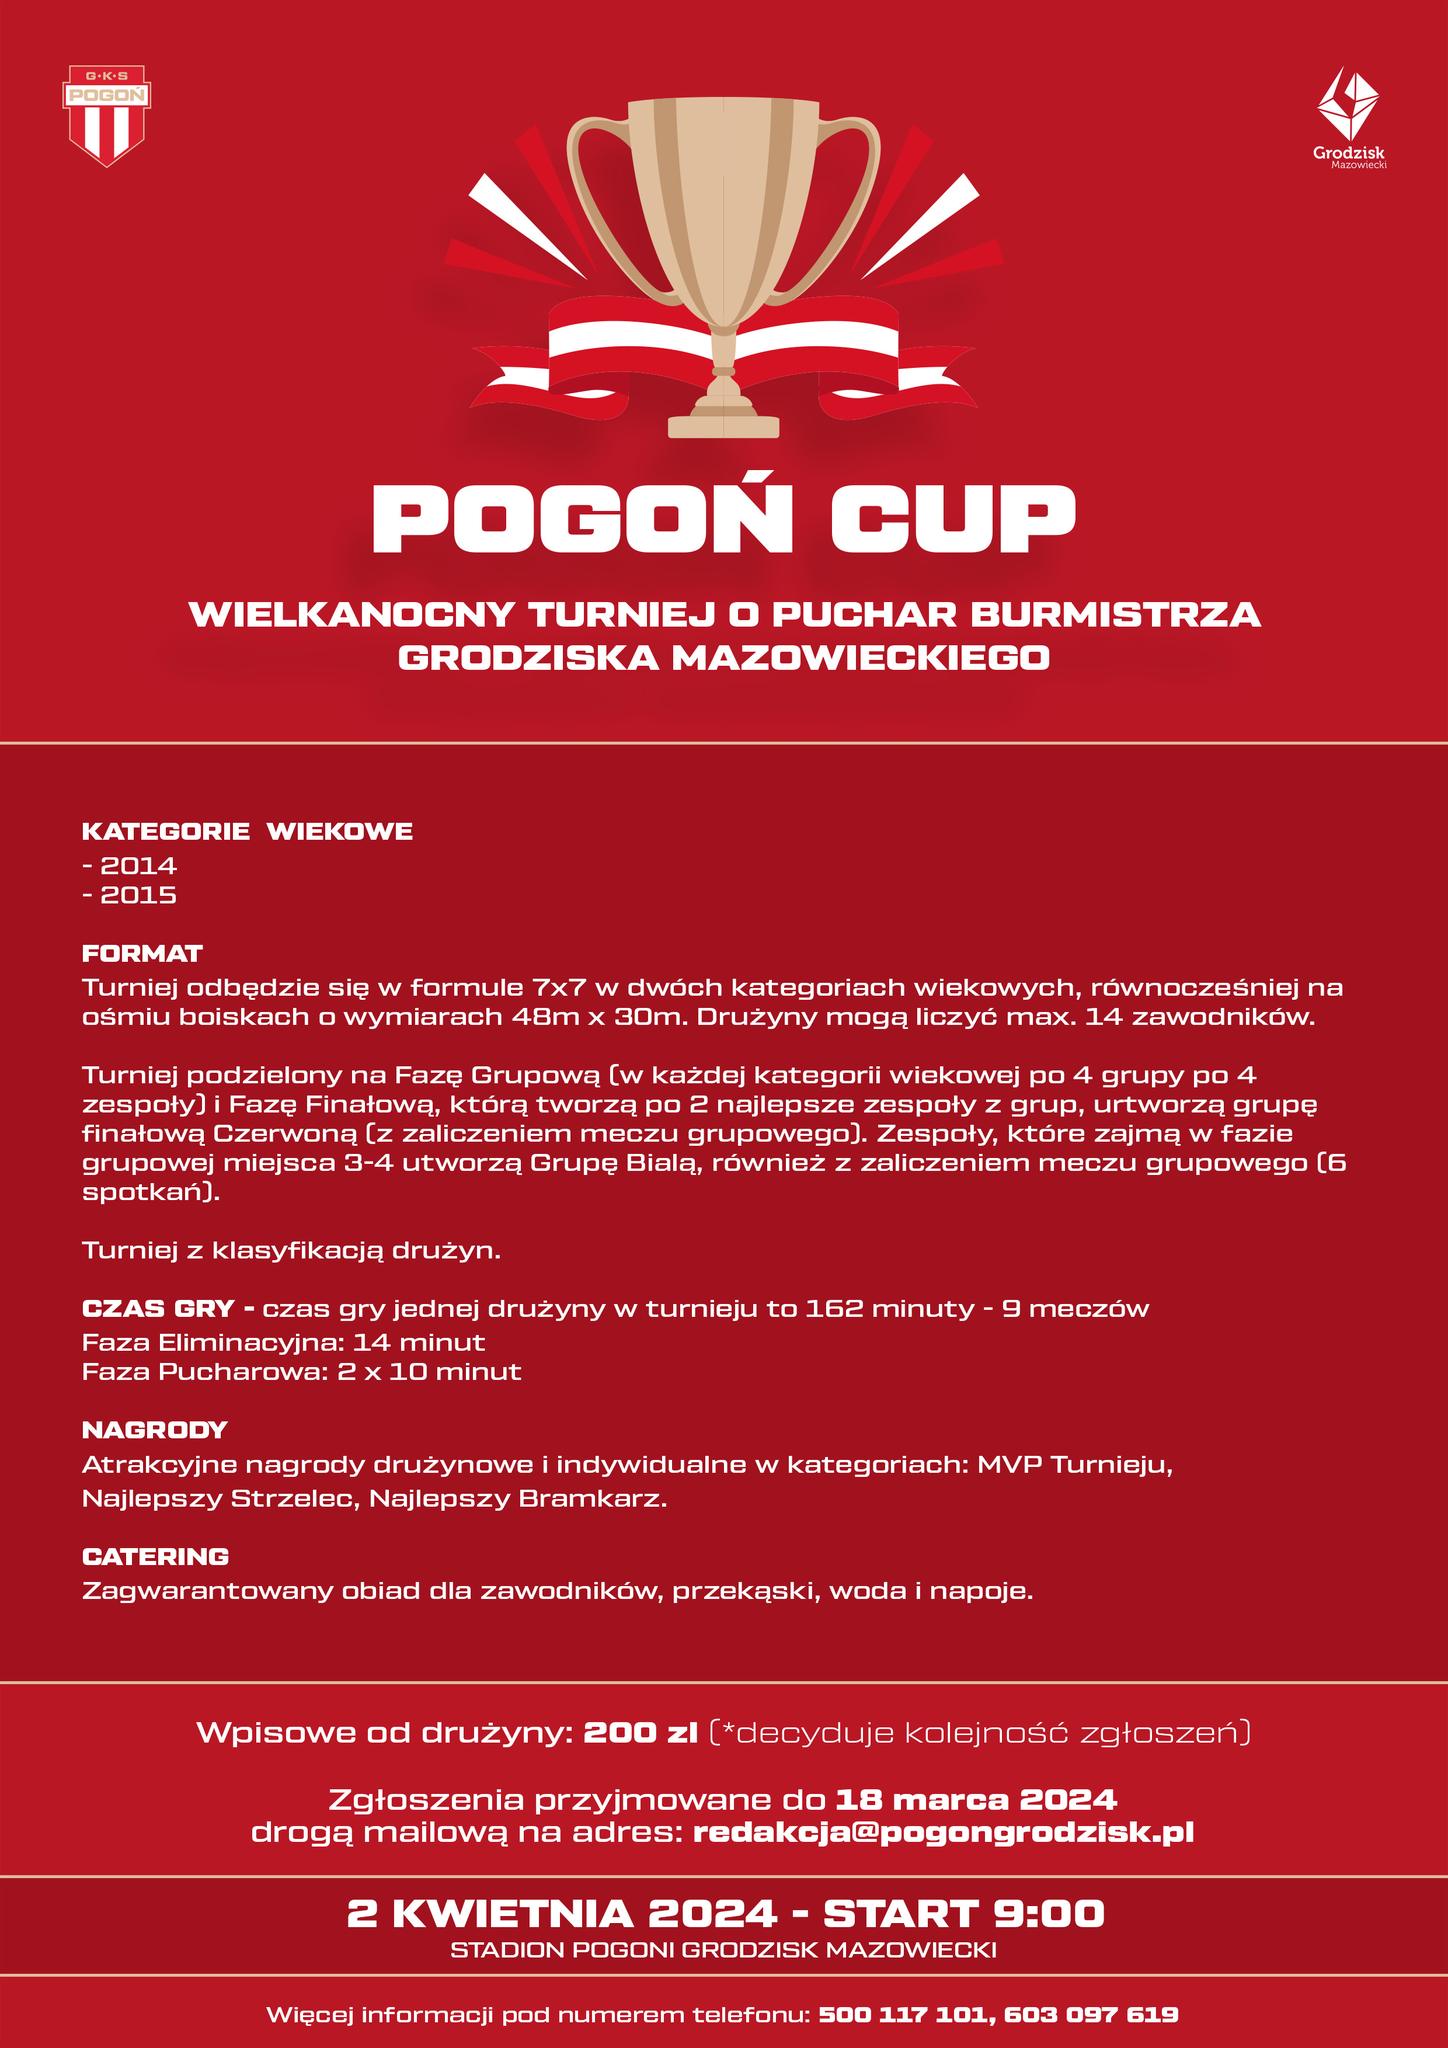 Pogoń Cup: Wielkanocny Turniej o Puchar Burmistrza Grodziska Mazowieckiego - godz. 9:00, Stadion Miejski